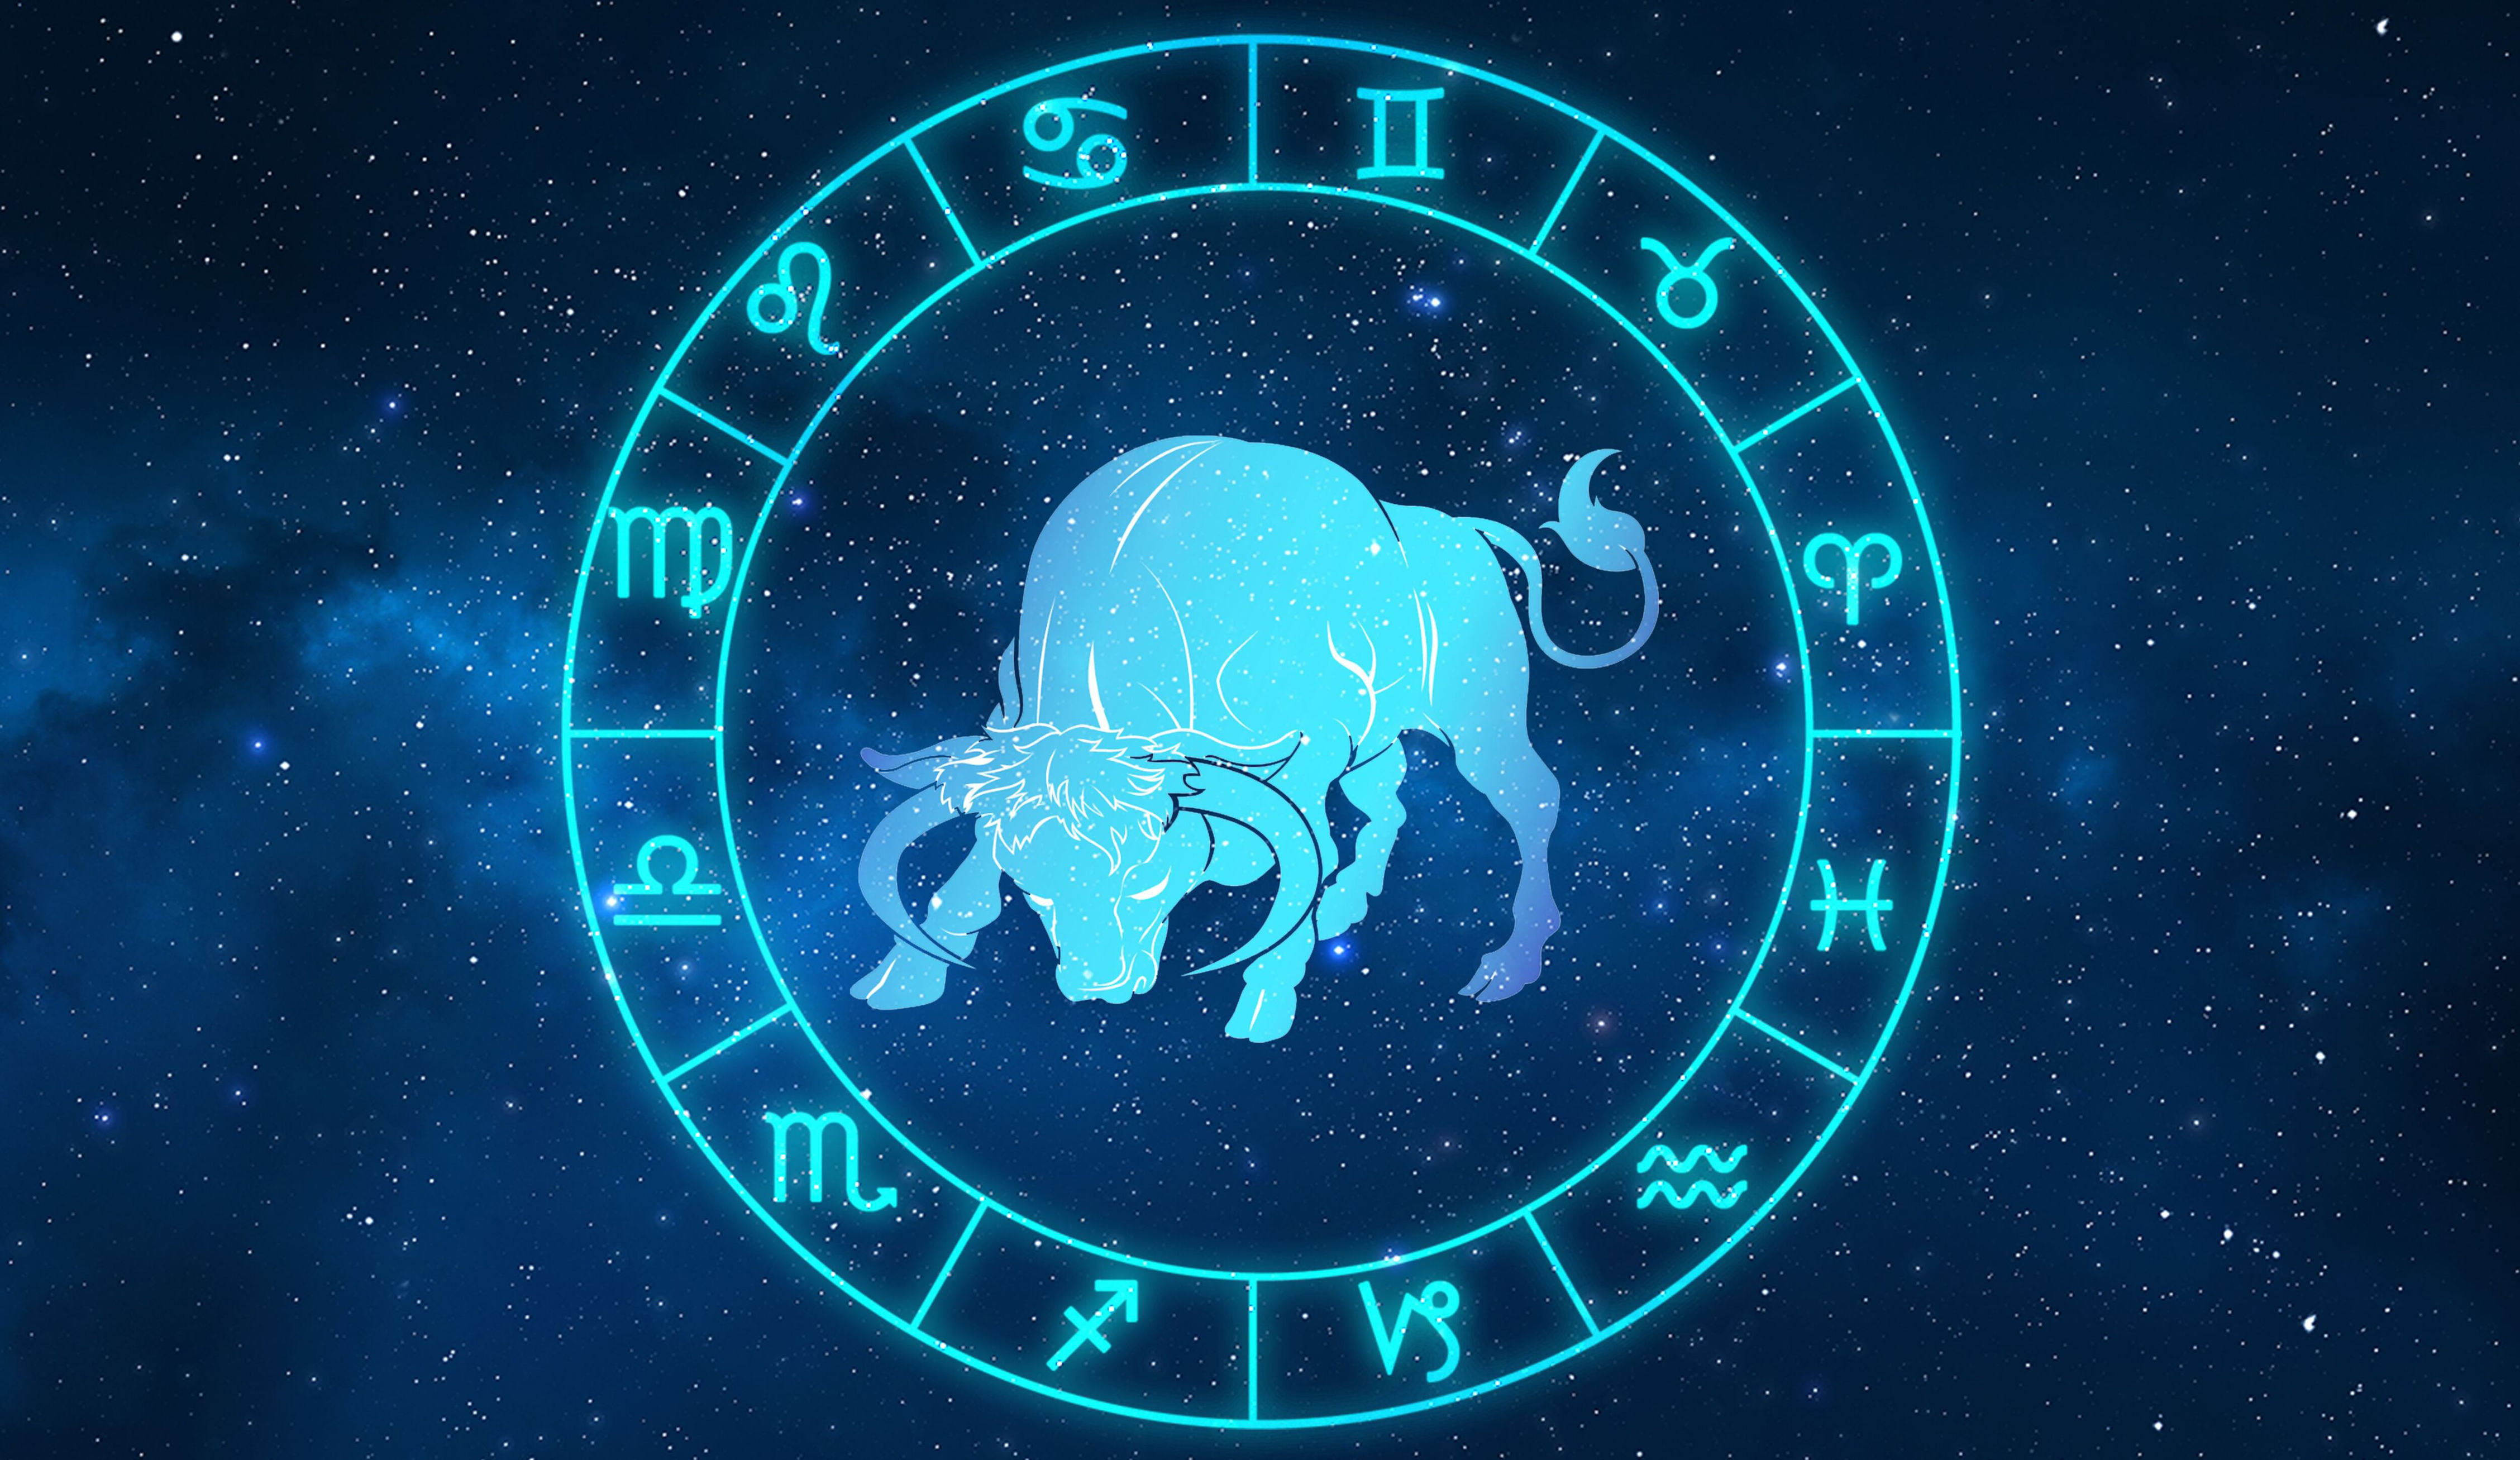 los signos del zodiaco que más atraerán el dinero en la era de tauro, según mhoni vidente